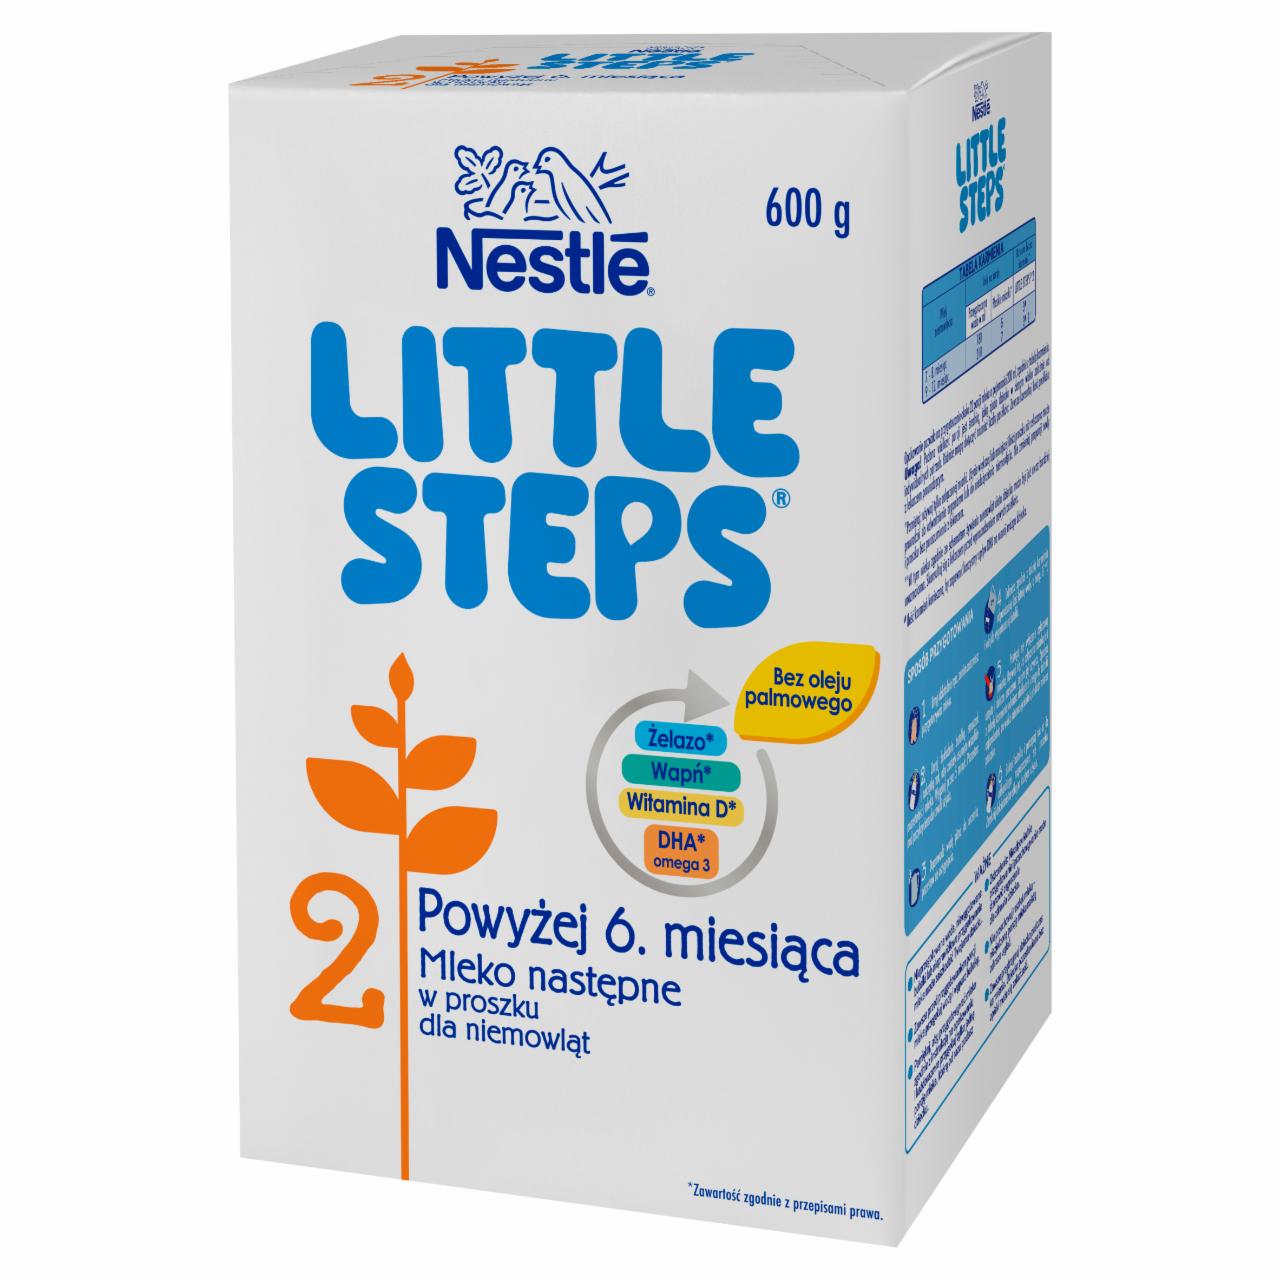 Zdjęcia - LITTLE STEPS 2 Mleko następne w proszku dla niemowląt powyżej 6. miesiąca 600 g (2 x 300 g)